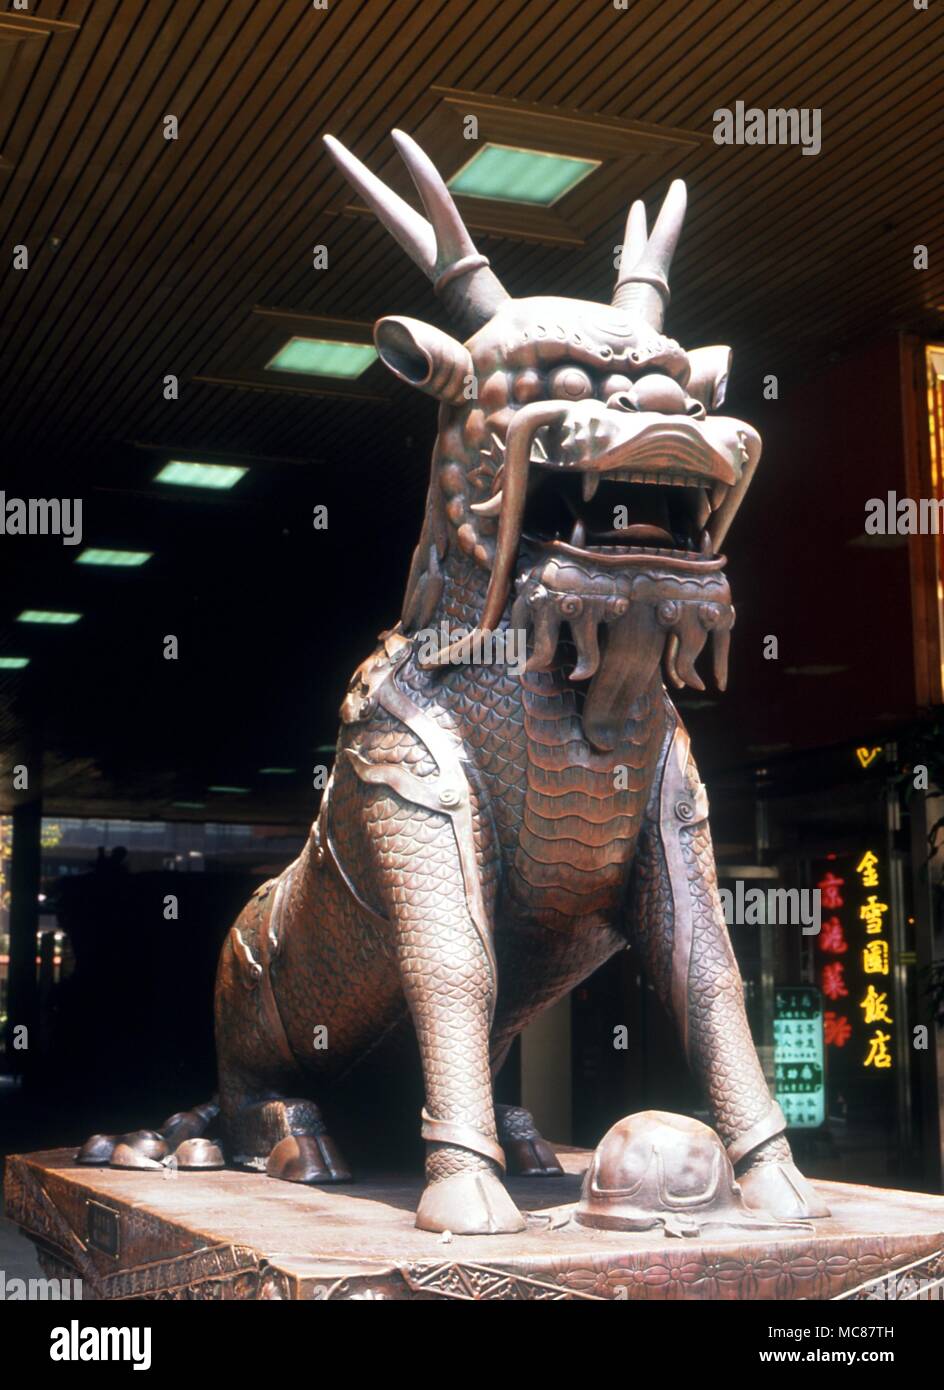 Chinesische Mythologie der Chinesischen Tier Composite mit Füßen von Pferd Körper von Lion Kopf des Drachen. Wächter an der Vorderseite des chinesischen kulturellen Zentrum Hong Kong Stockfoto